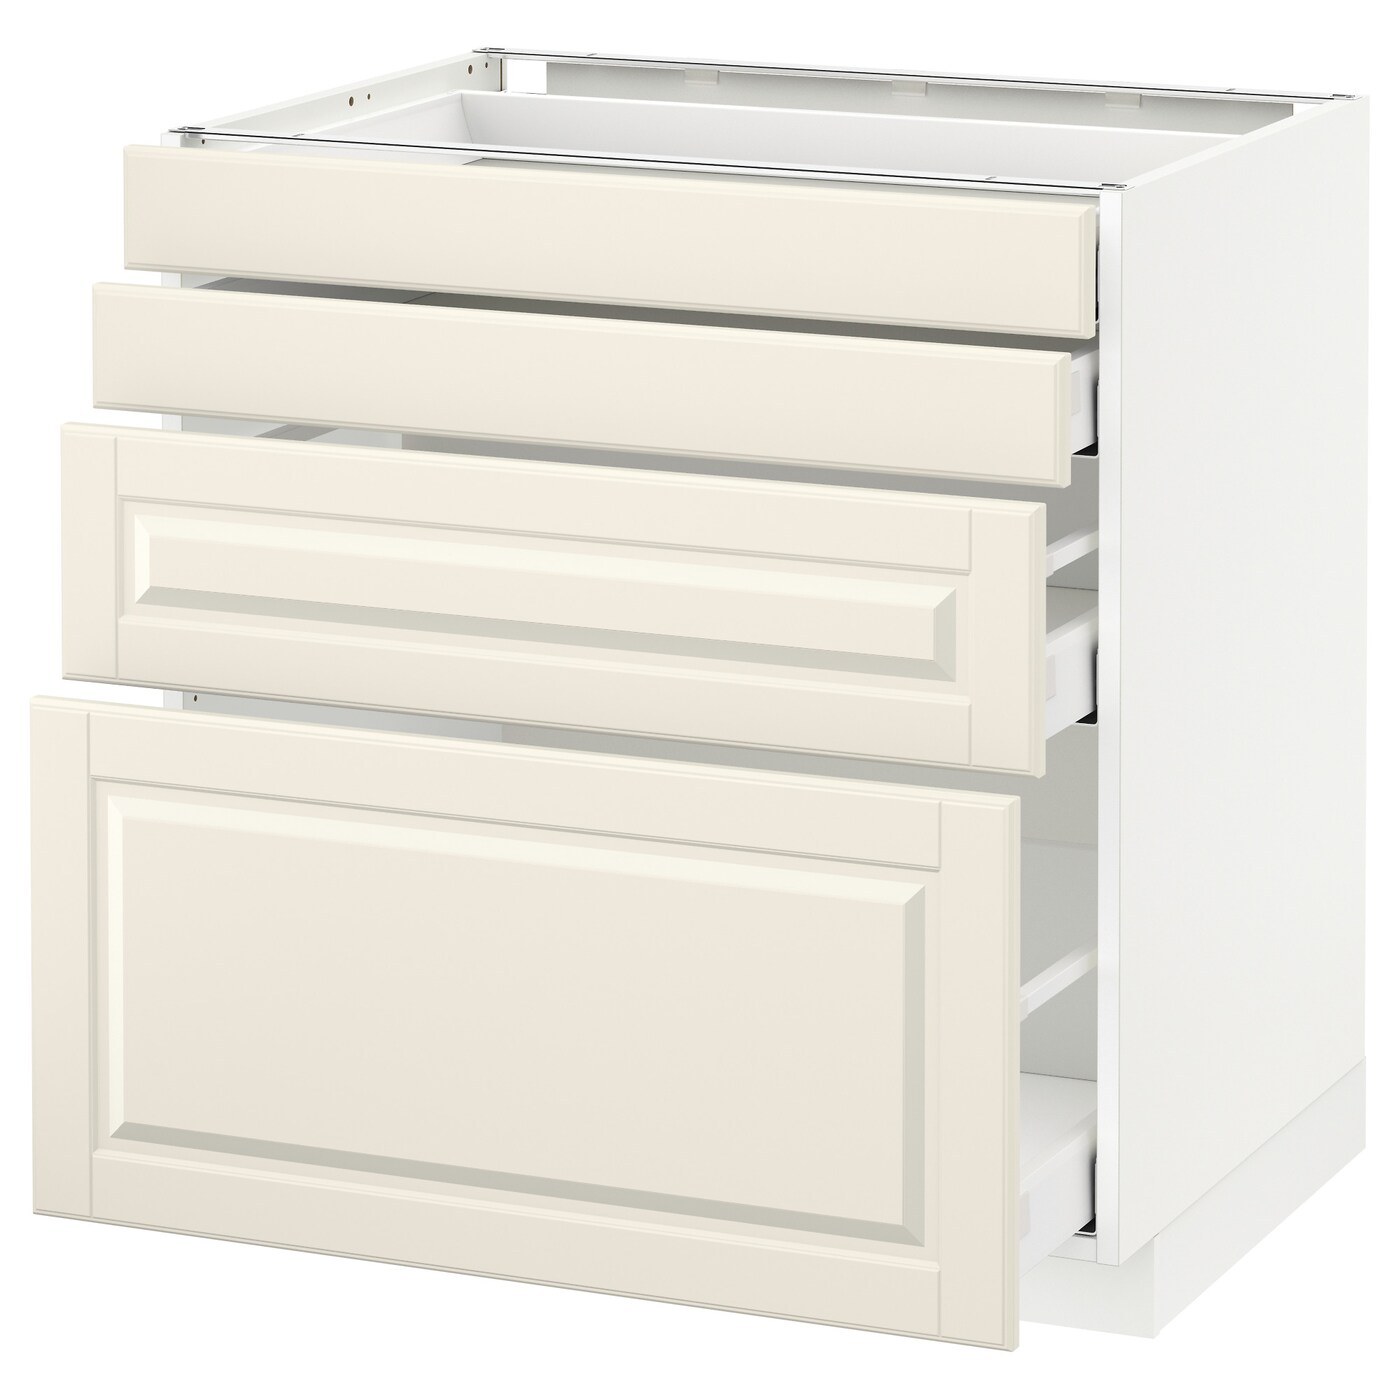 Напольный кухонный шкаф  - IKEA METOD MAXIMERA, 88x62x80см, белый/светло-бежевый, МЕТОД МАКСИМЕРА ИКЕА